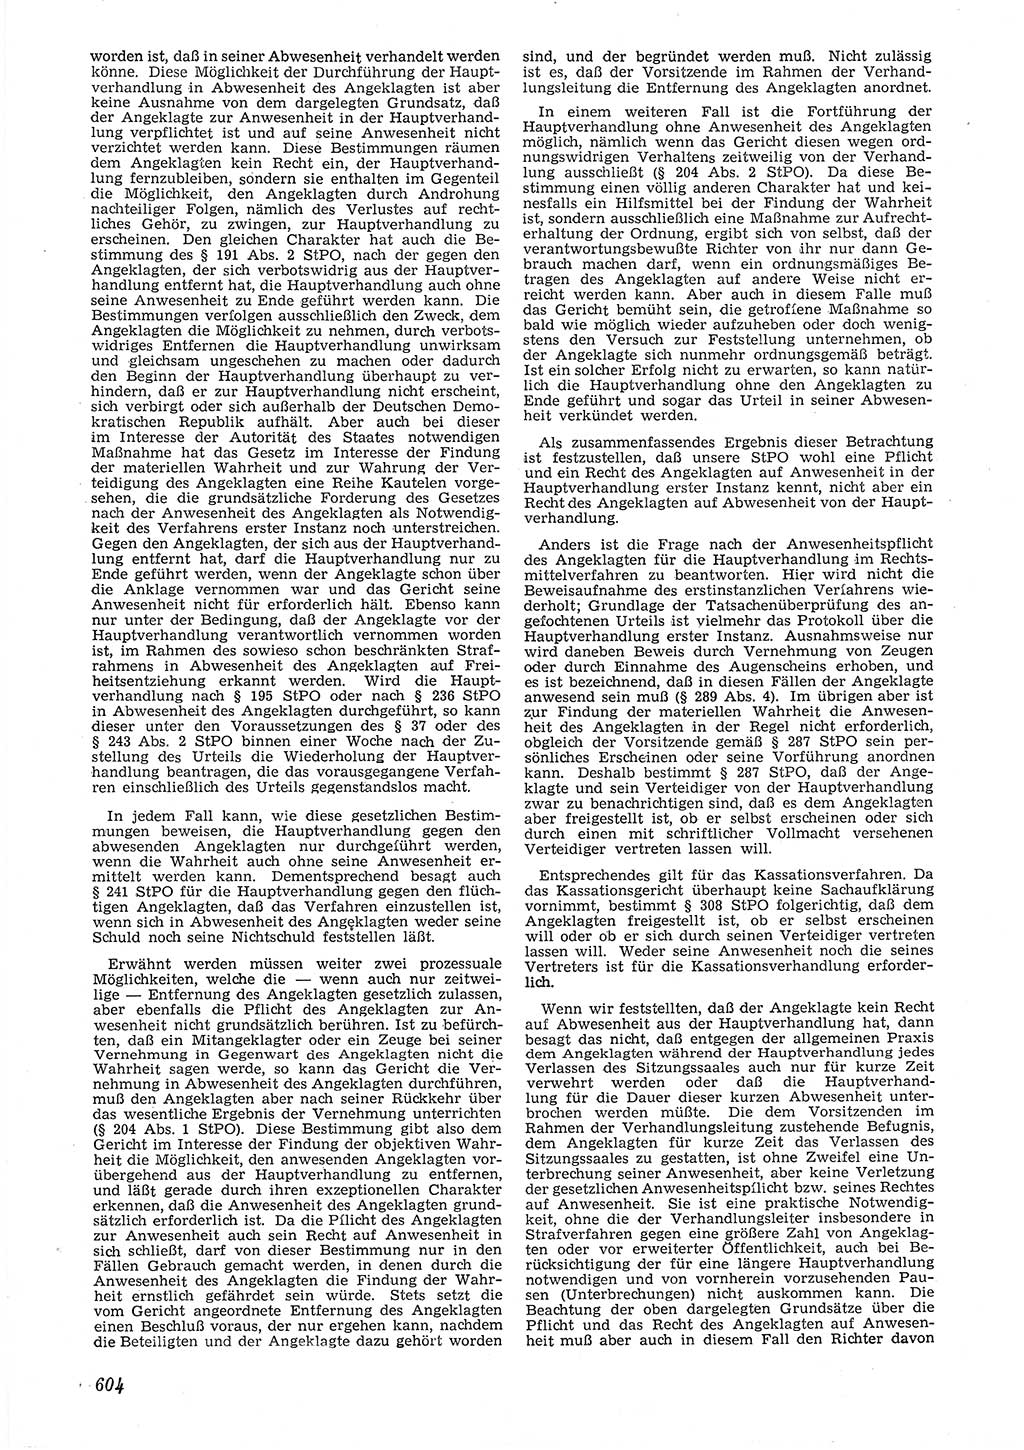 Neue Justiz (NJ), Zeitschrift für Recht und Rechtswissenschaft [Deutsche Demokratische Republik (DDR)], 6. Jahrgang 1952, Seite 604 (NJ DDR 1952, S. 604)